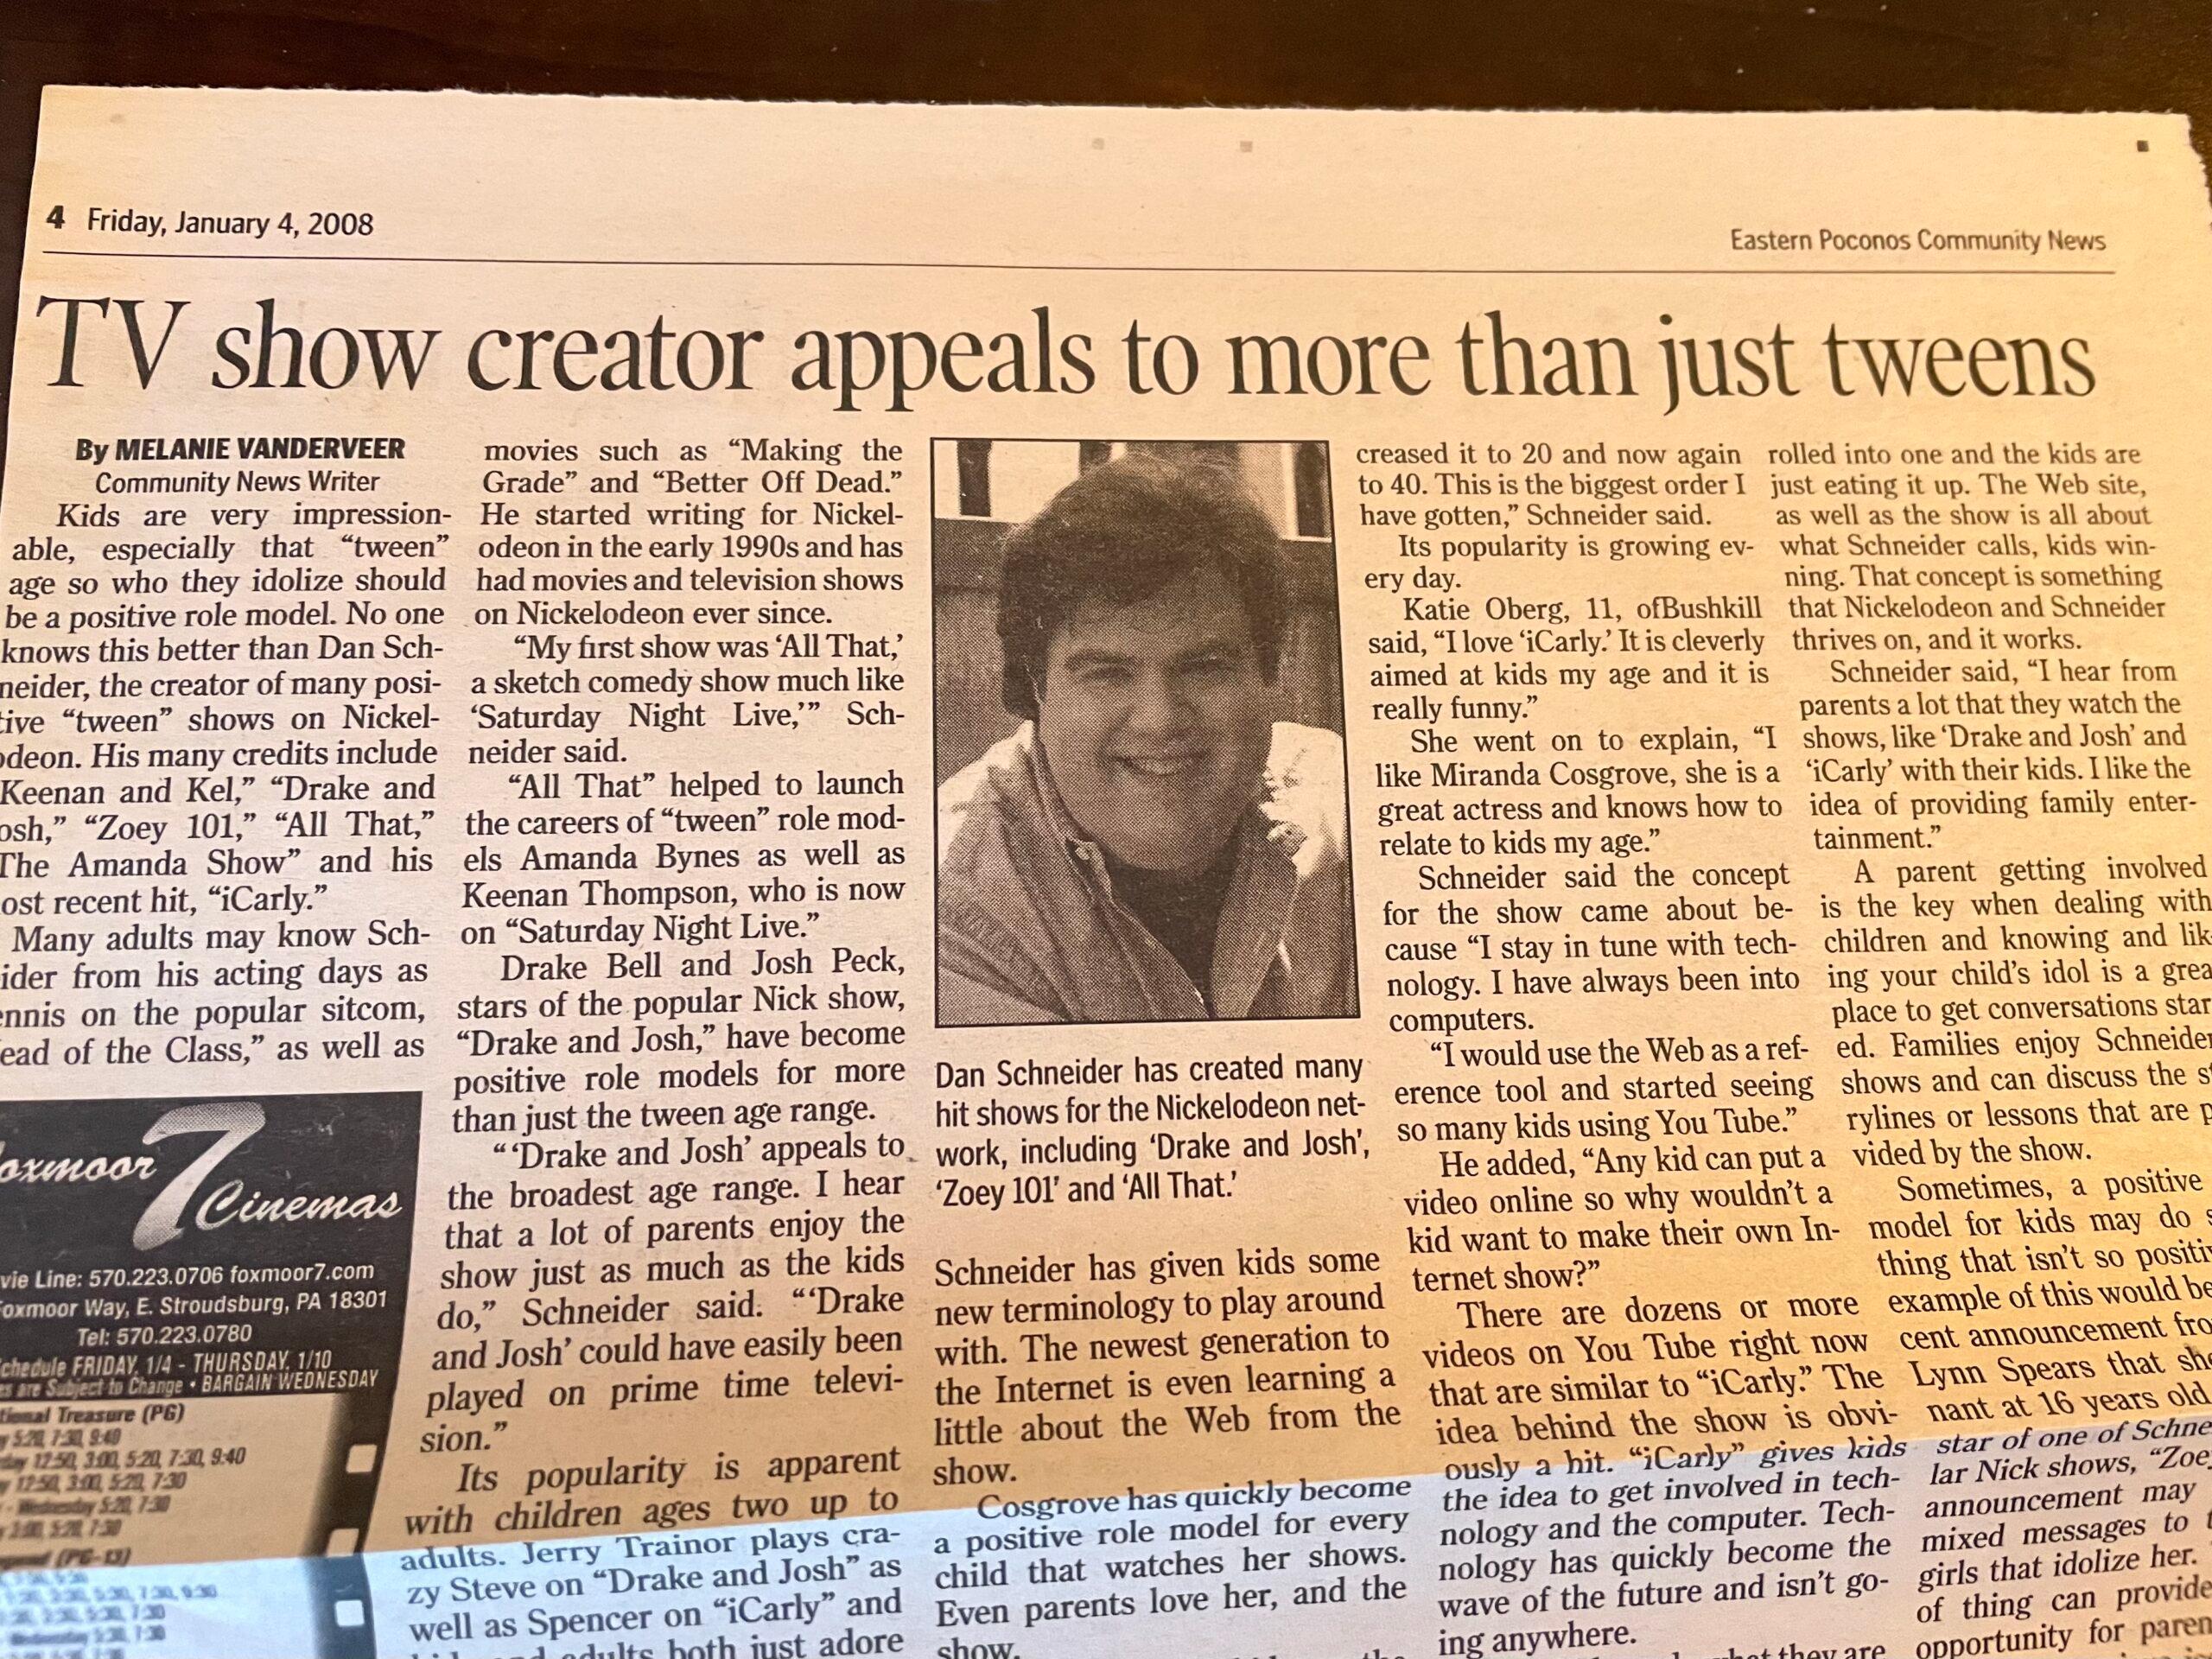 Dan Schneider in the newspaper